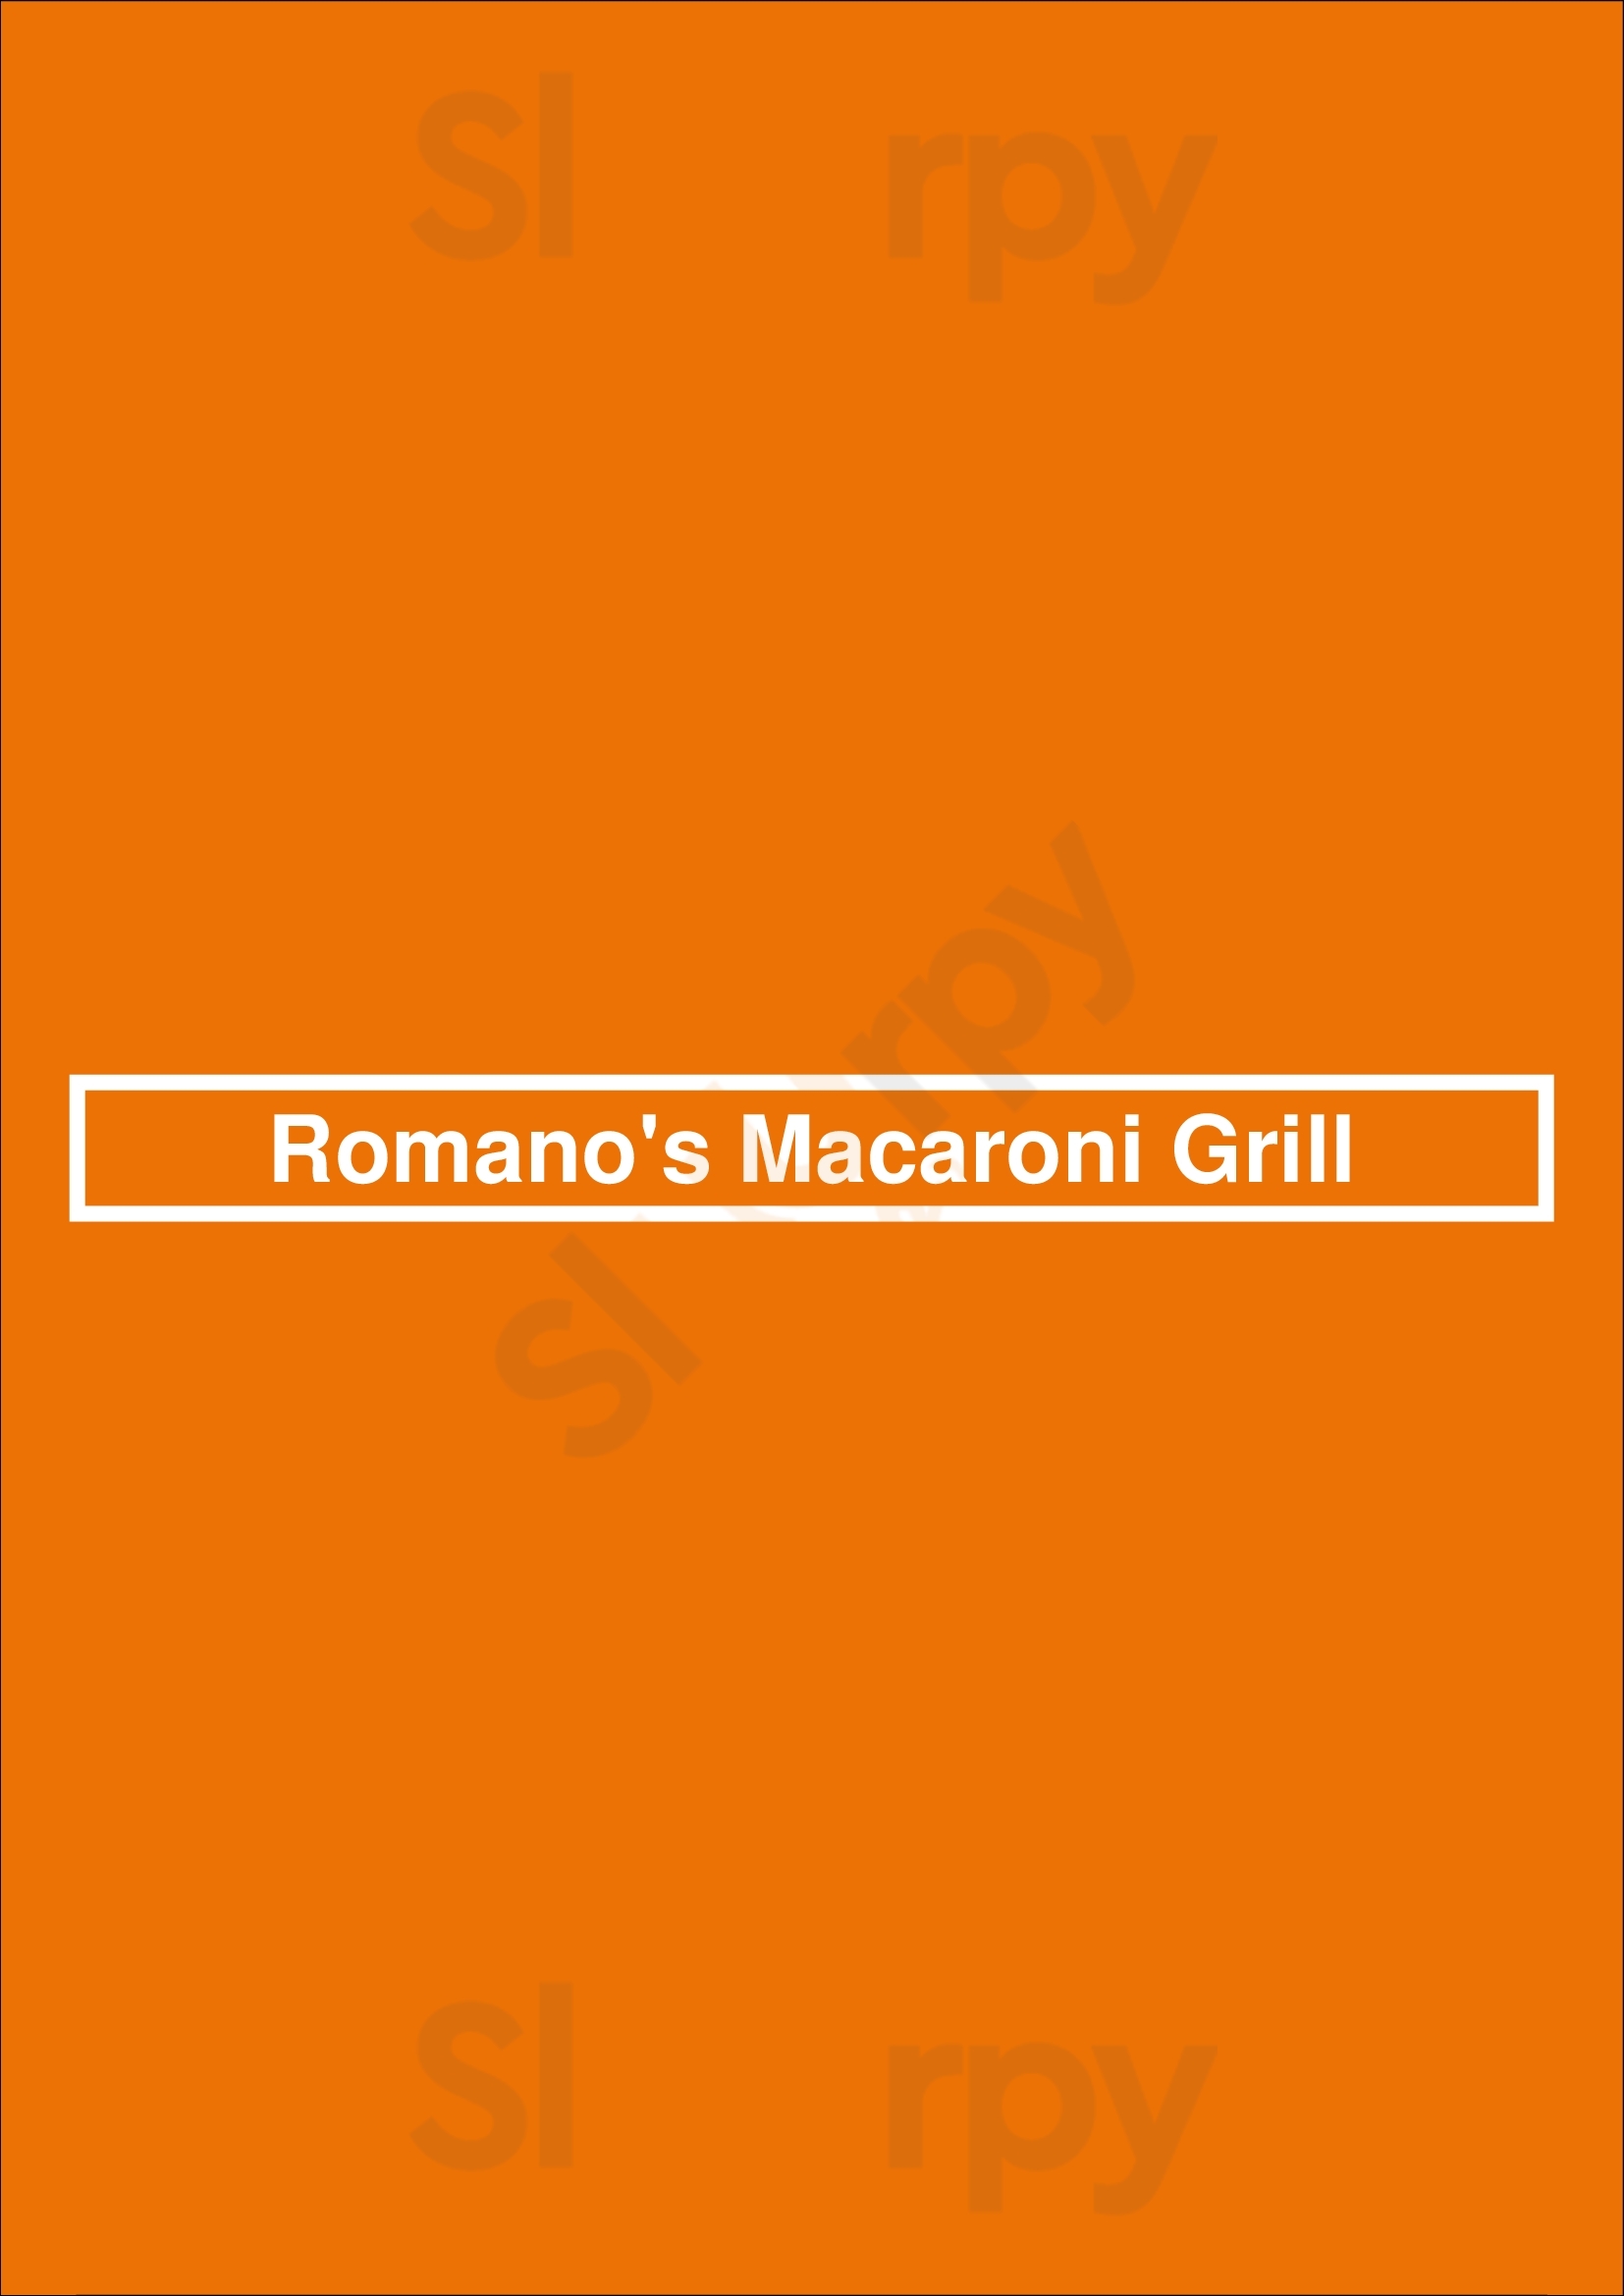 Romano's Macaroni Grill Rochester Menu - 1